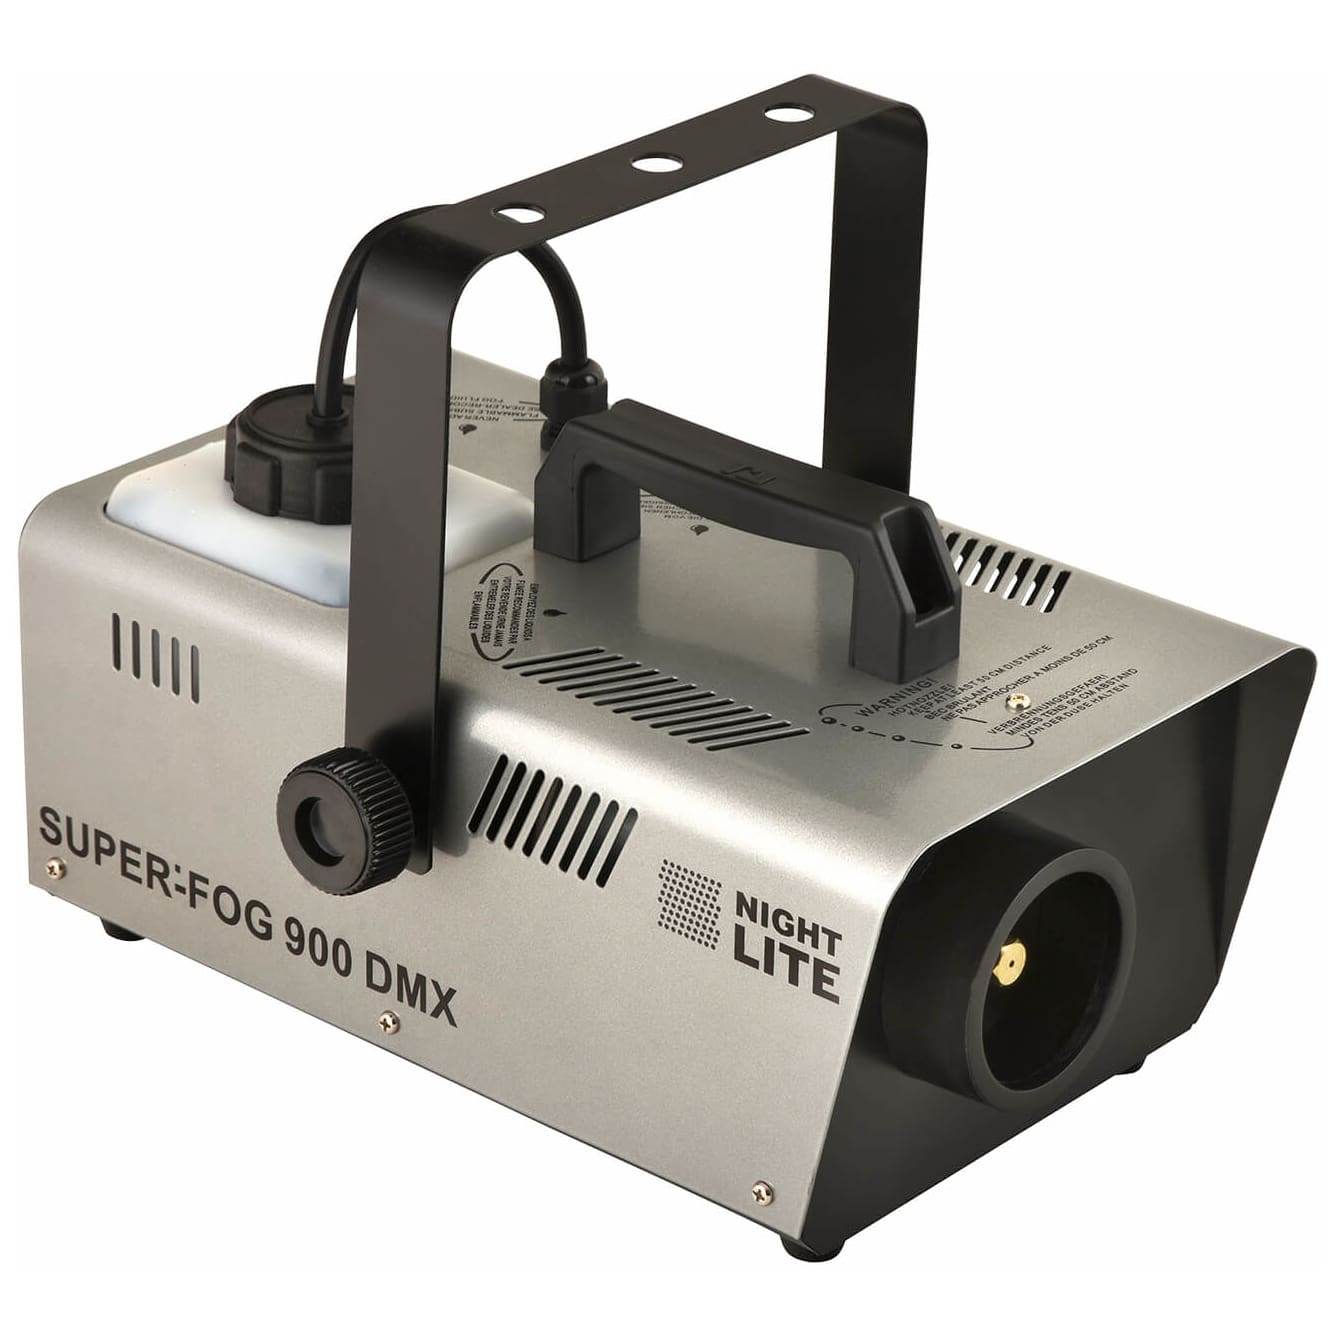 Nightlite Super-Fog 900 DMX Nebelmaschine